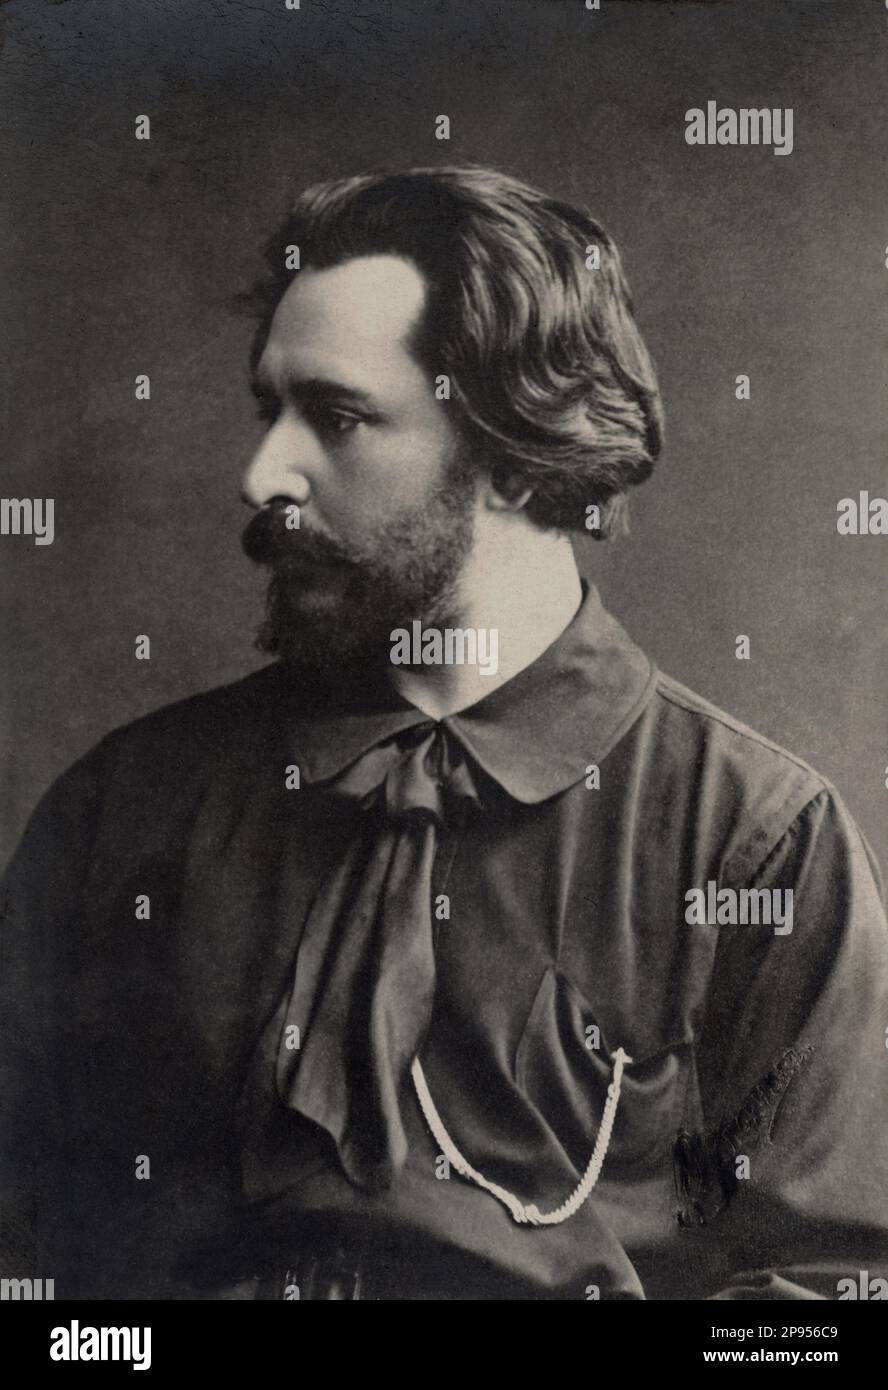 1915 ca : The russian writer and playwright LEONID Nikolaevic ANDREEV ( Orel 1871 - Mustamaggi 1919 ) , close friend of writer  Maksim Gorkij  ( 1868 - 1936 ) - ANDREYEV - ANDREIYEV - portrait - ritratto - baffi - moustache - barba - beard - cravatta - tie  - LETTERATO - SCRITTORE - LETTERATURA -  Literature - PORTRAIT - RITRATTO  - POET - POETA - POESIA - POETRY - PROFILE - PROFILO - collar - colletto  ---- Archivio GBB Stock Photo